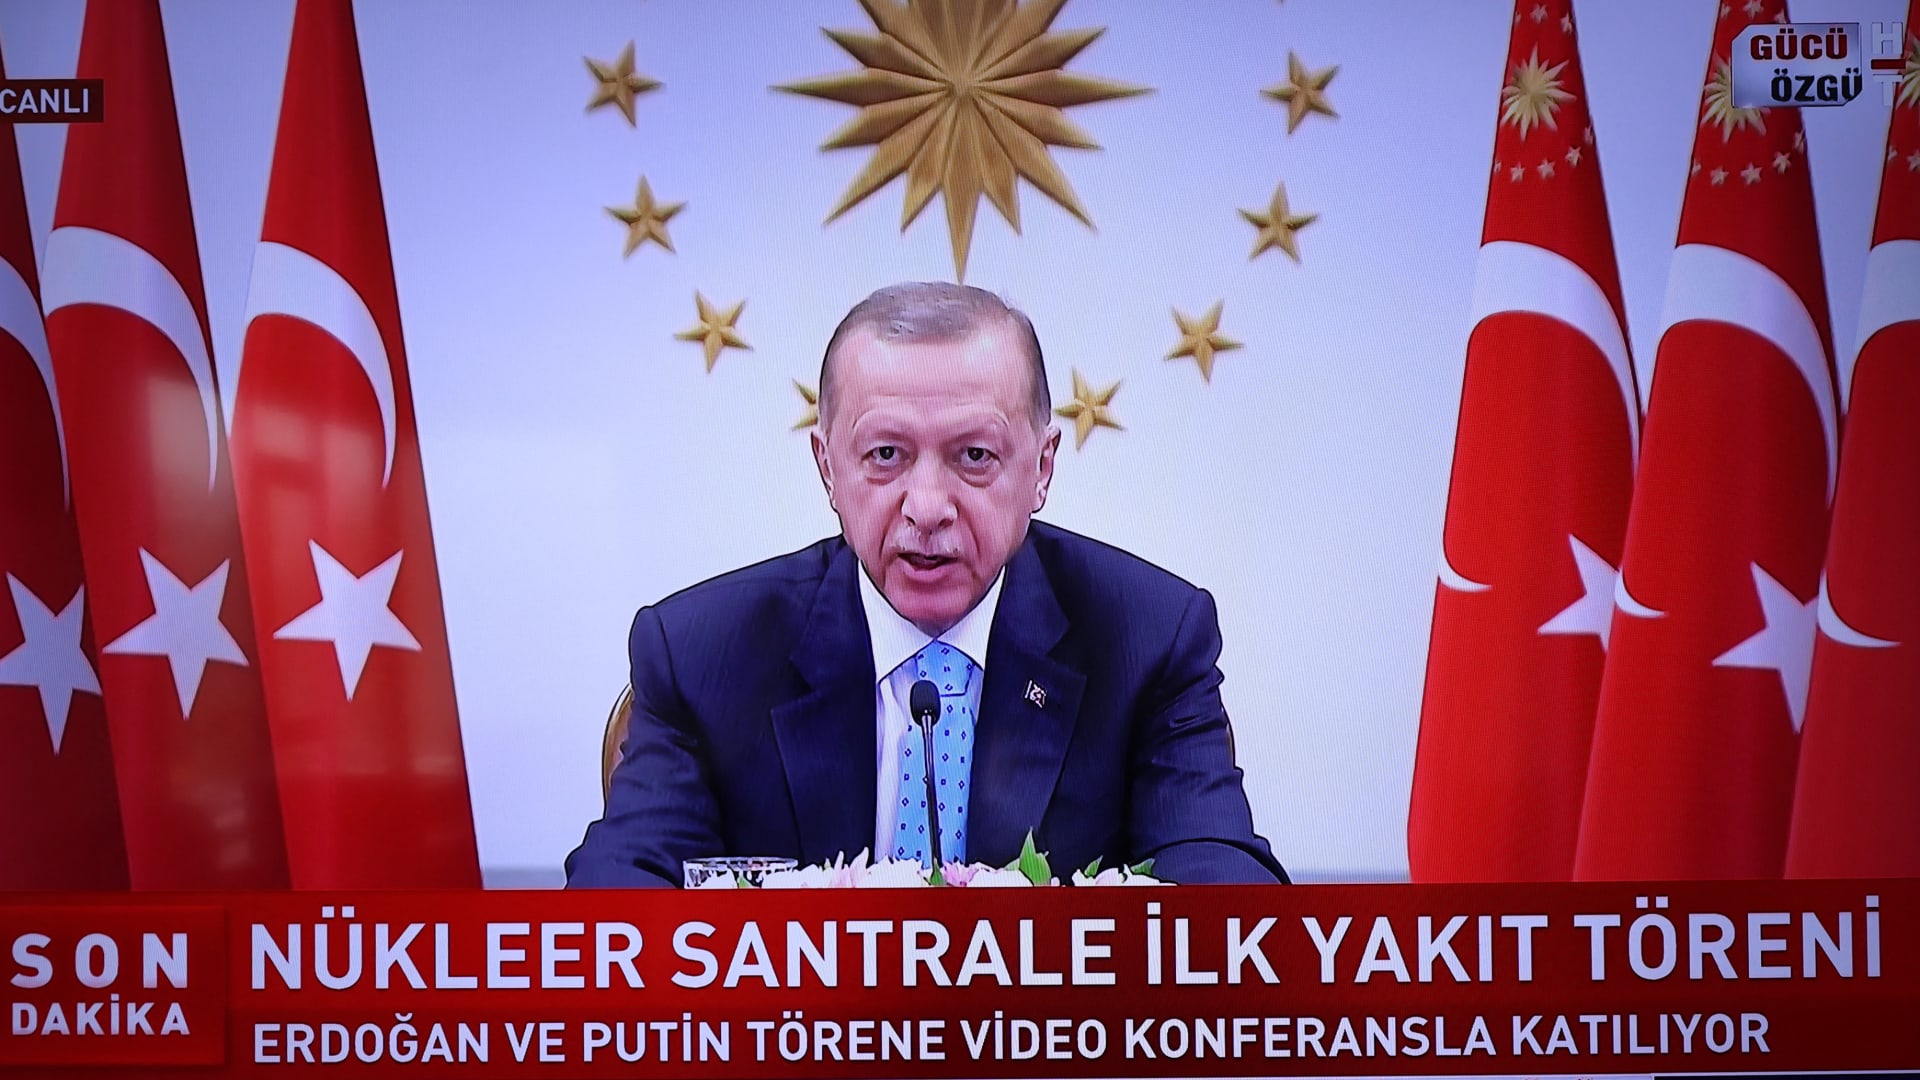 أردوغان يشعل تفاعلا بإعلان "تركيا تدخل نادي الدول النووية"